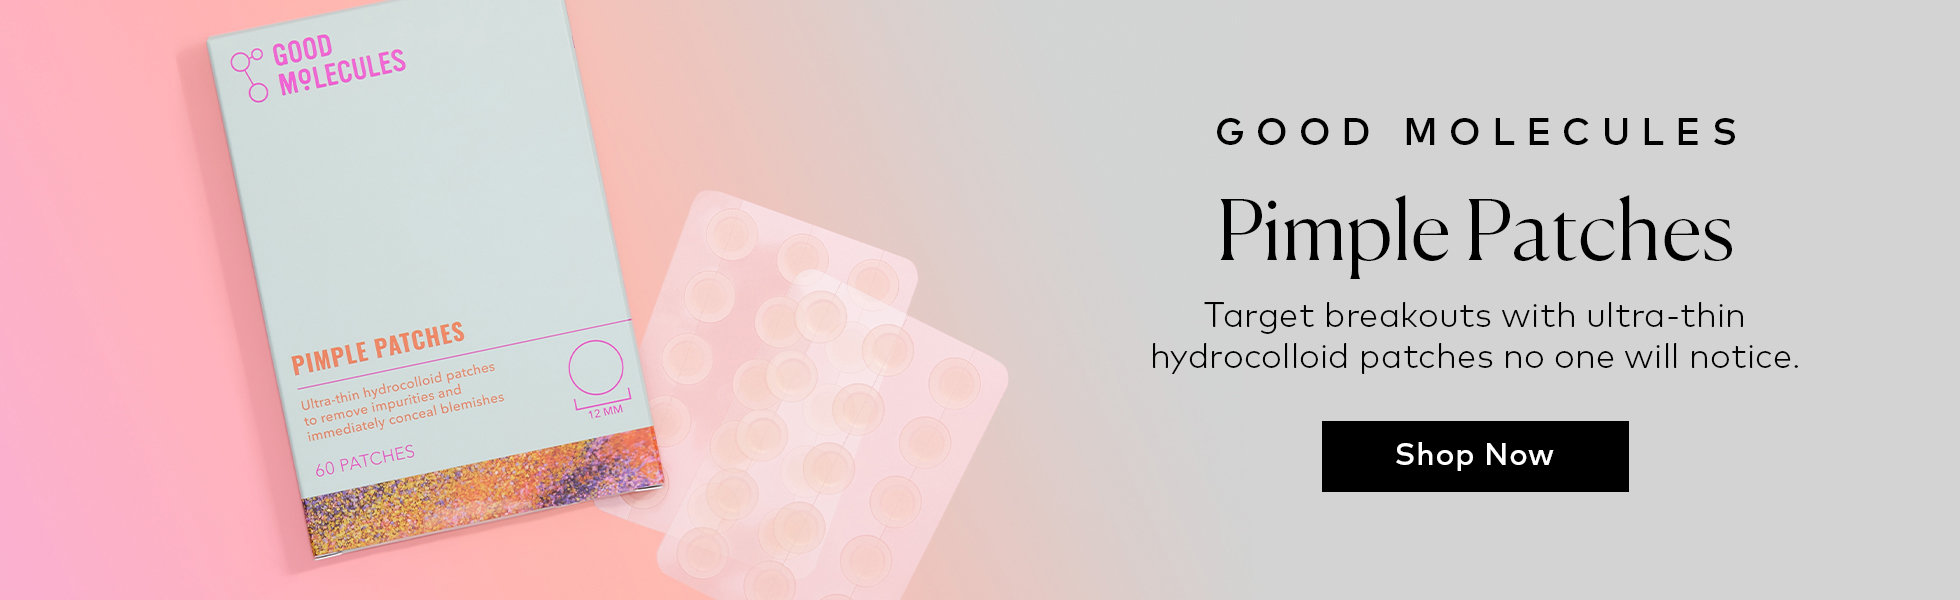 Shop the Good Molecules Pimple Patches at Beautylish.com